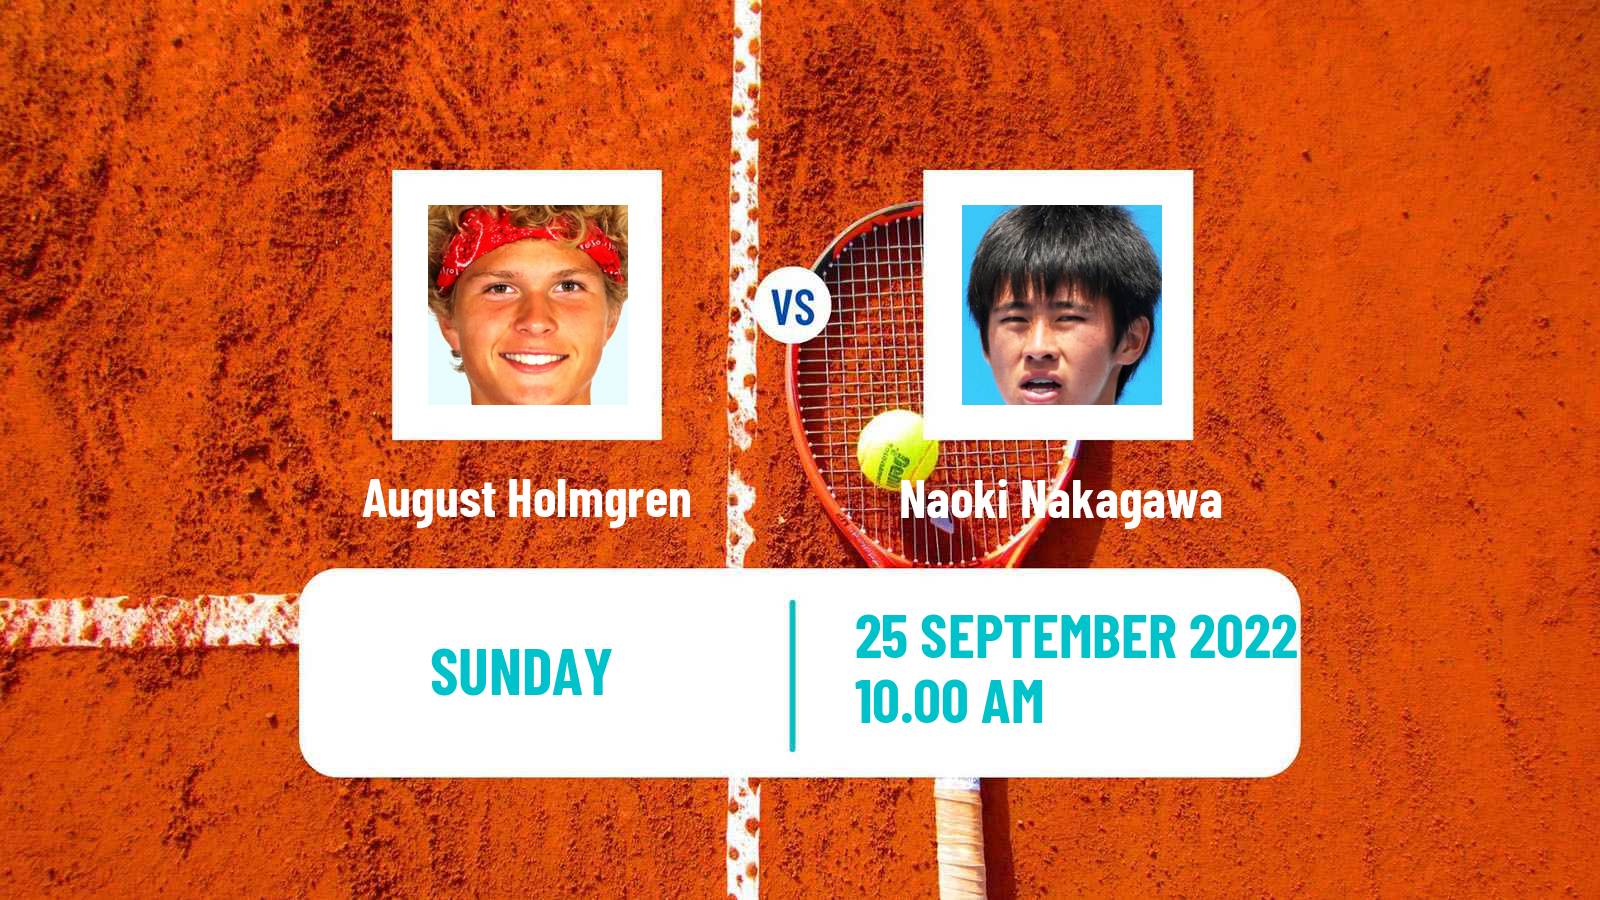 Tennis ATP Challenger August Holmgren - Naoki Nakagawa